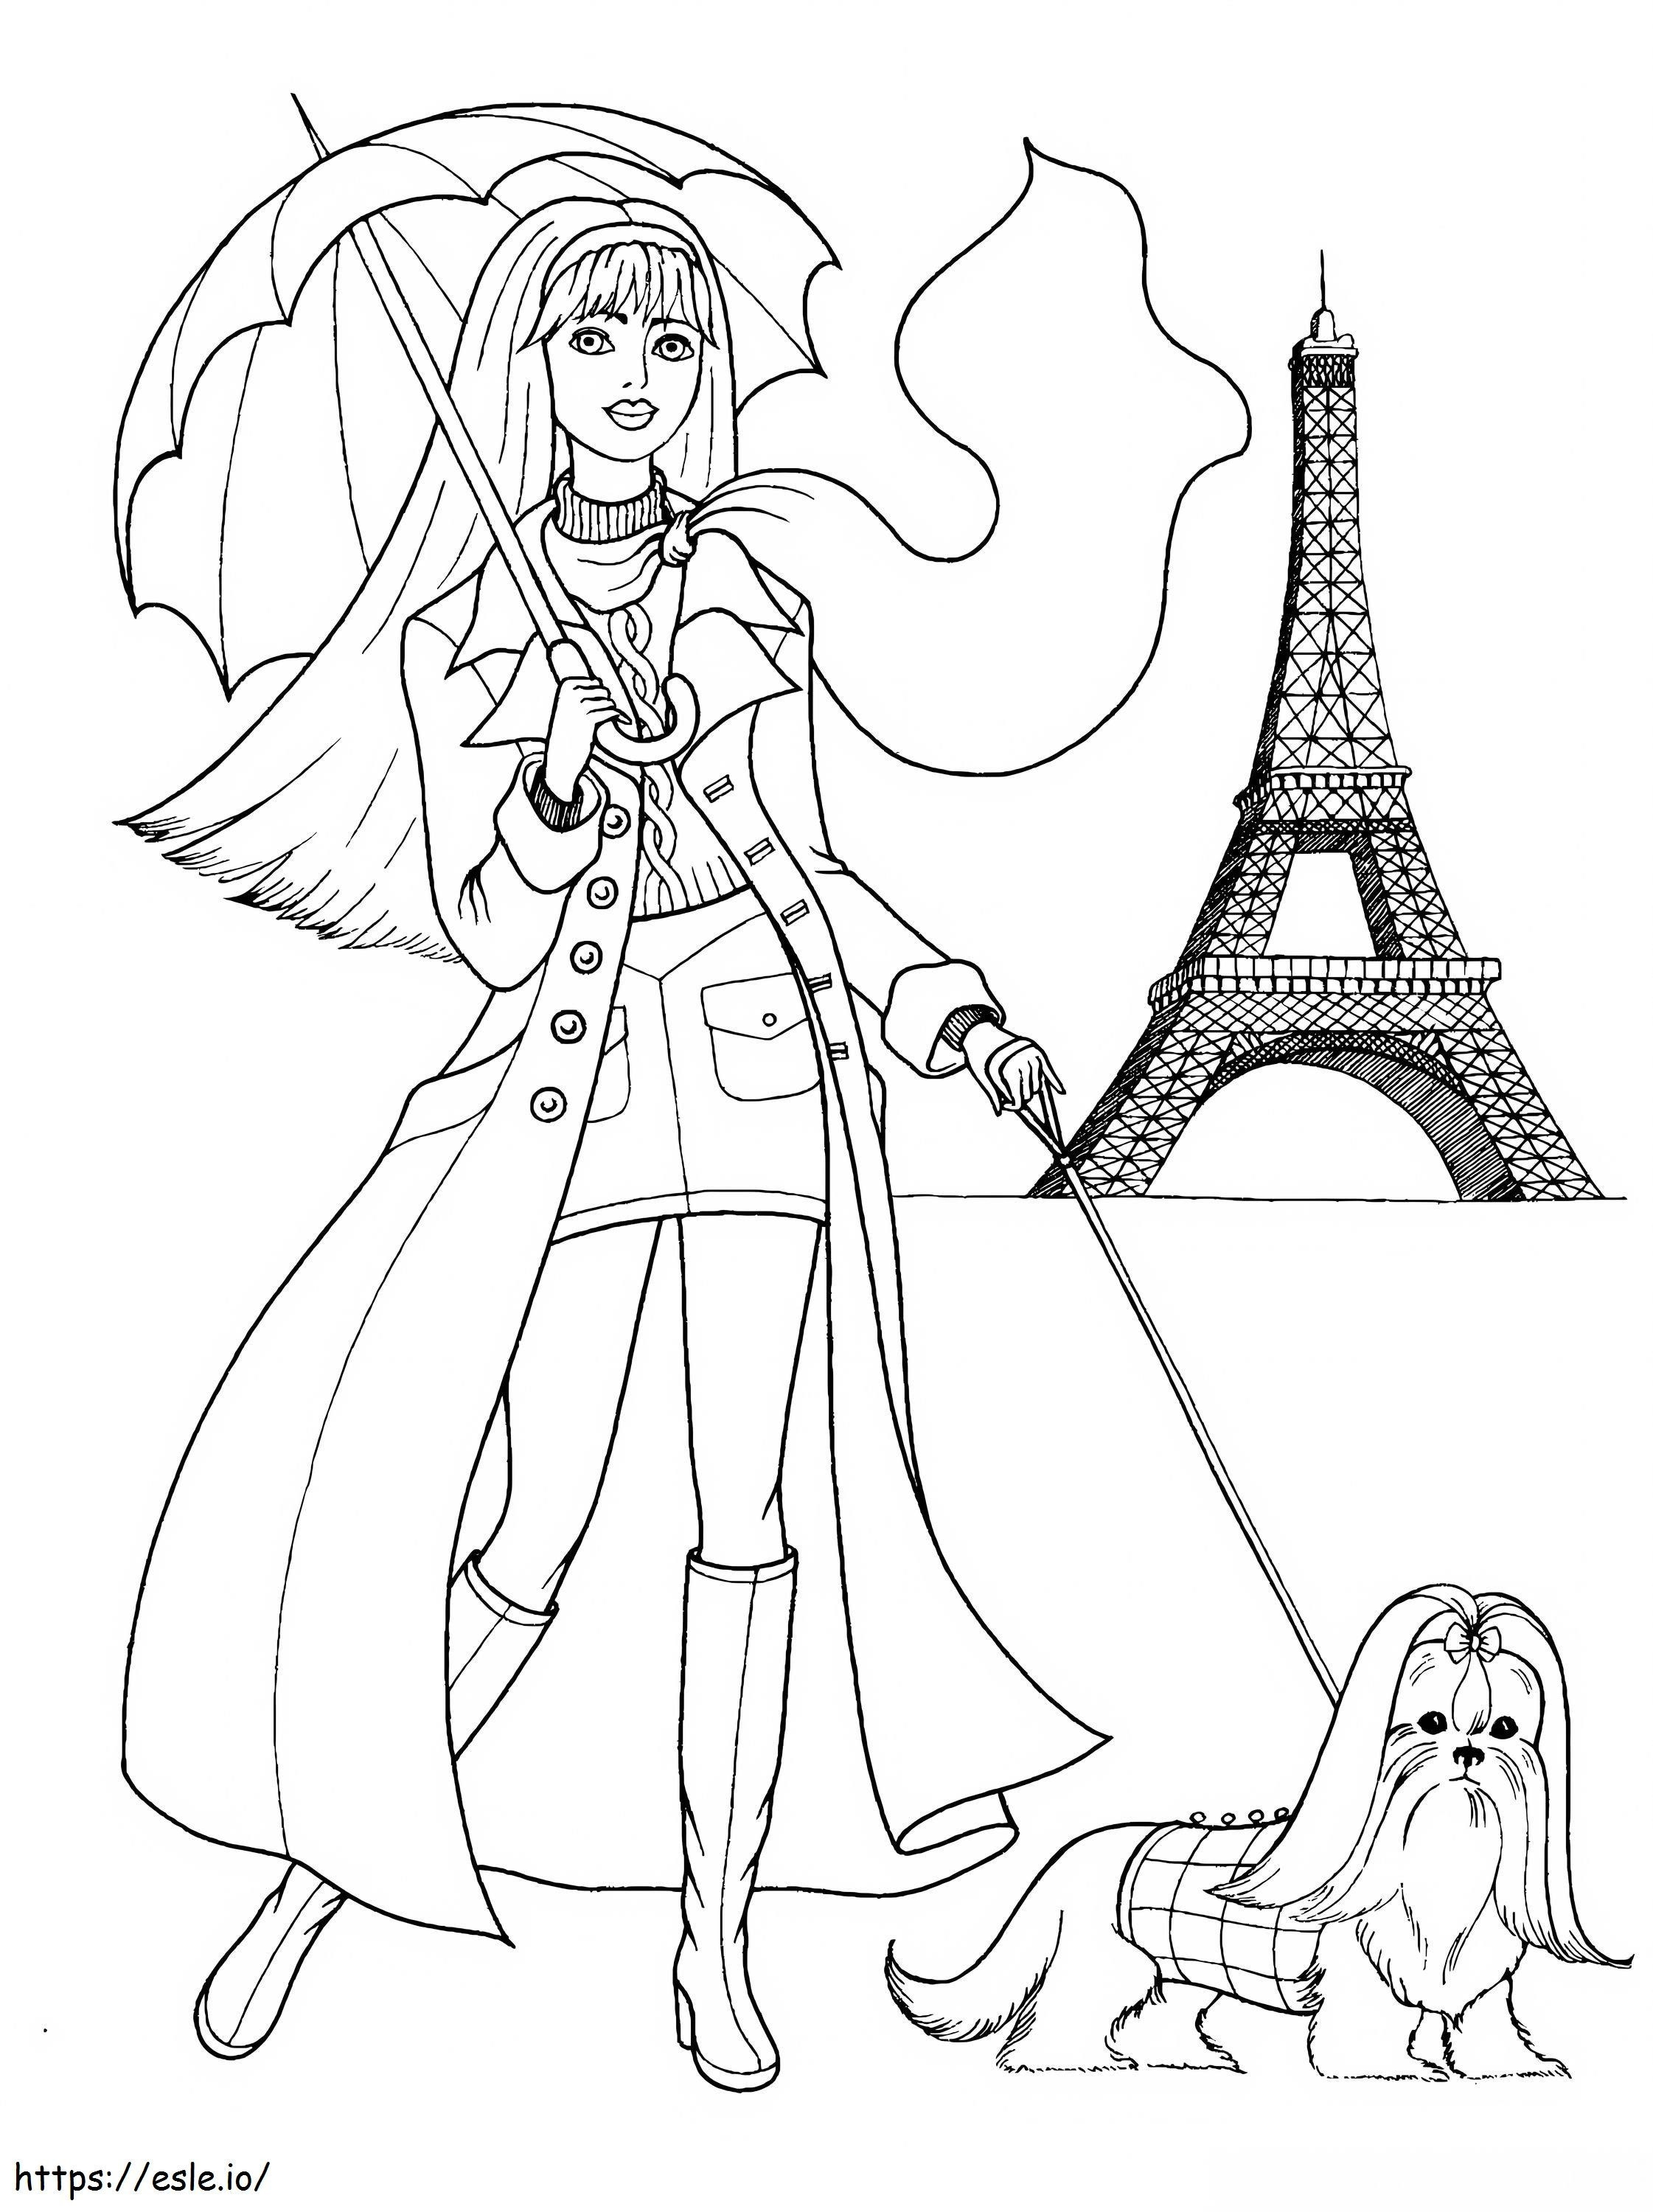 Das Mädchen, das mit dem Hund spazieren geht, und der Eiffelturm in Paris ausmalbilder